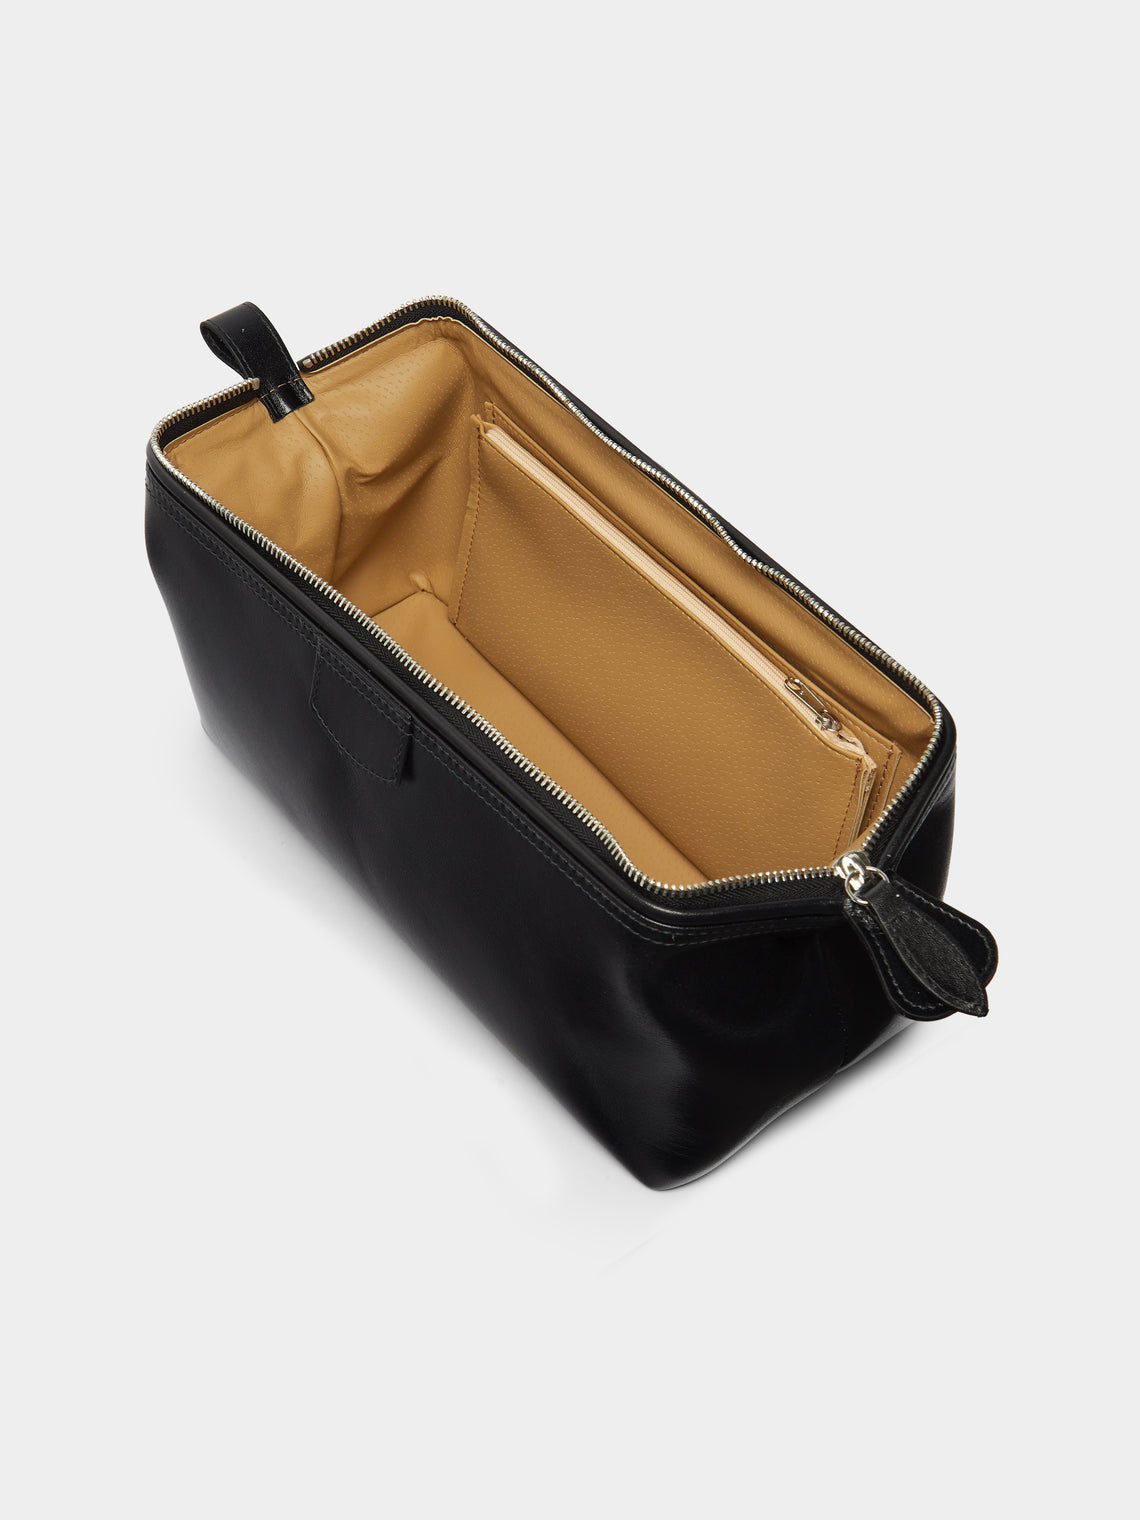 F. Hammann - Leather Medium Wash Bag -  - ABASK